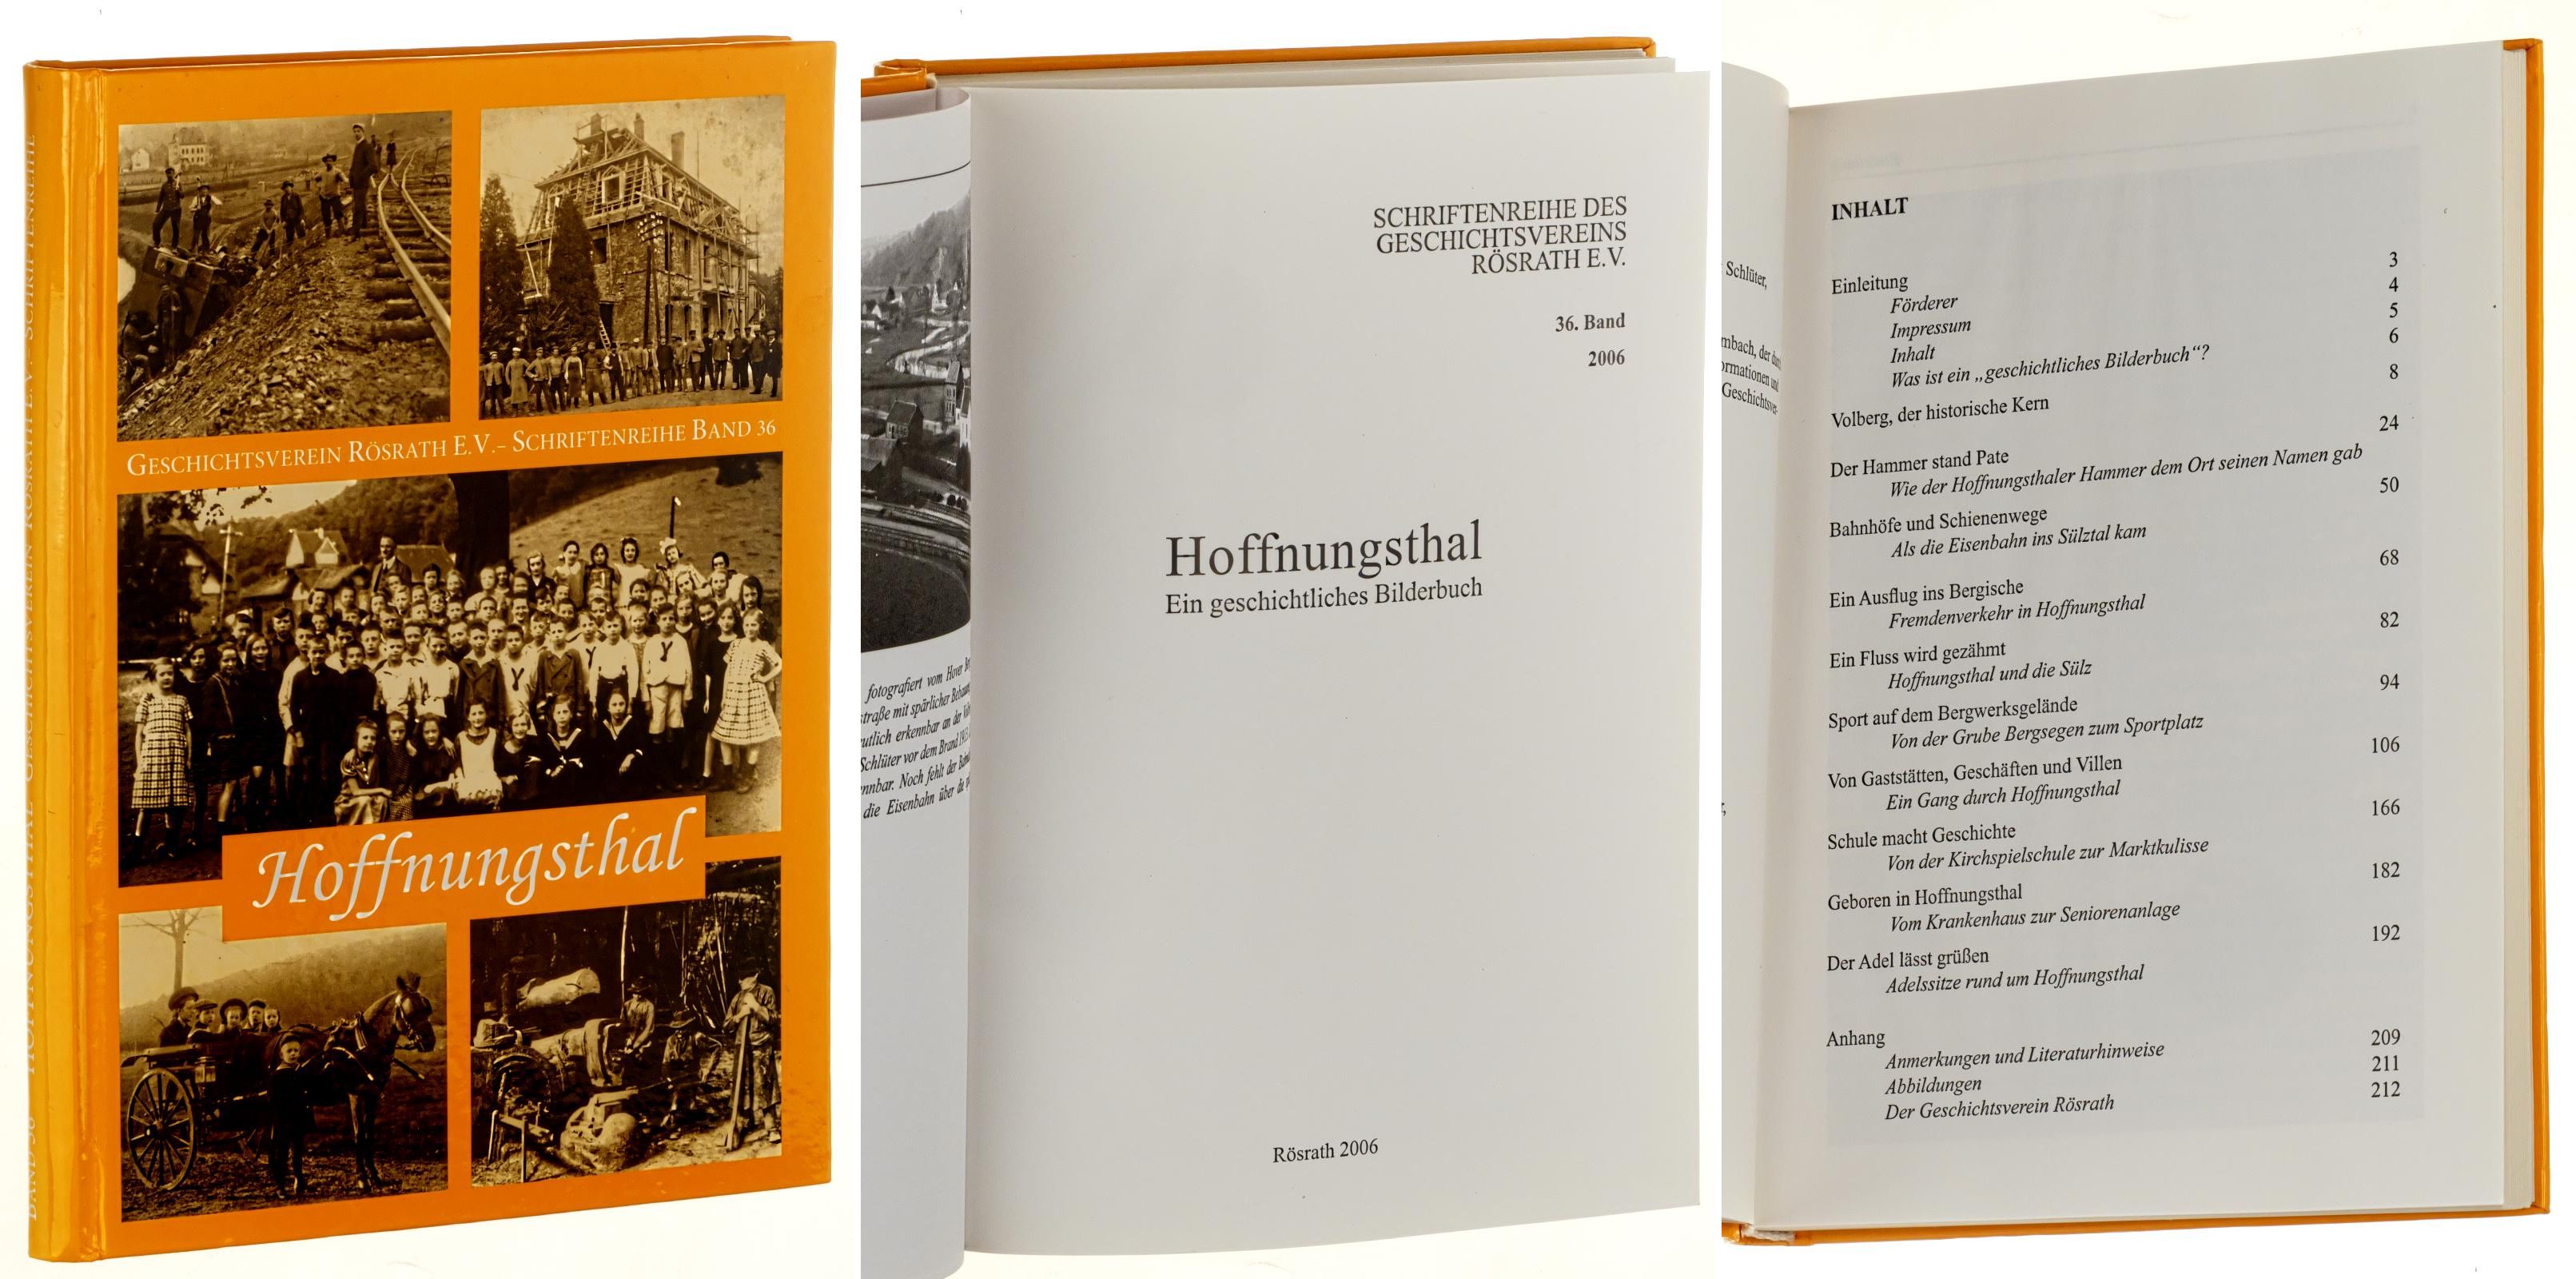   Schriftenreihe des Geschichtsvereins für die Gemeinde Rösrath und Umgebung e.V. Band 36 (2006): Hoffnungsthal - ein geschichtliches Bilderbuch. 